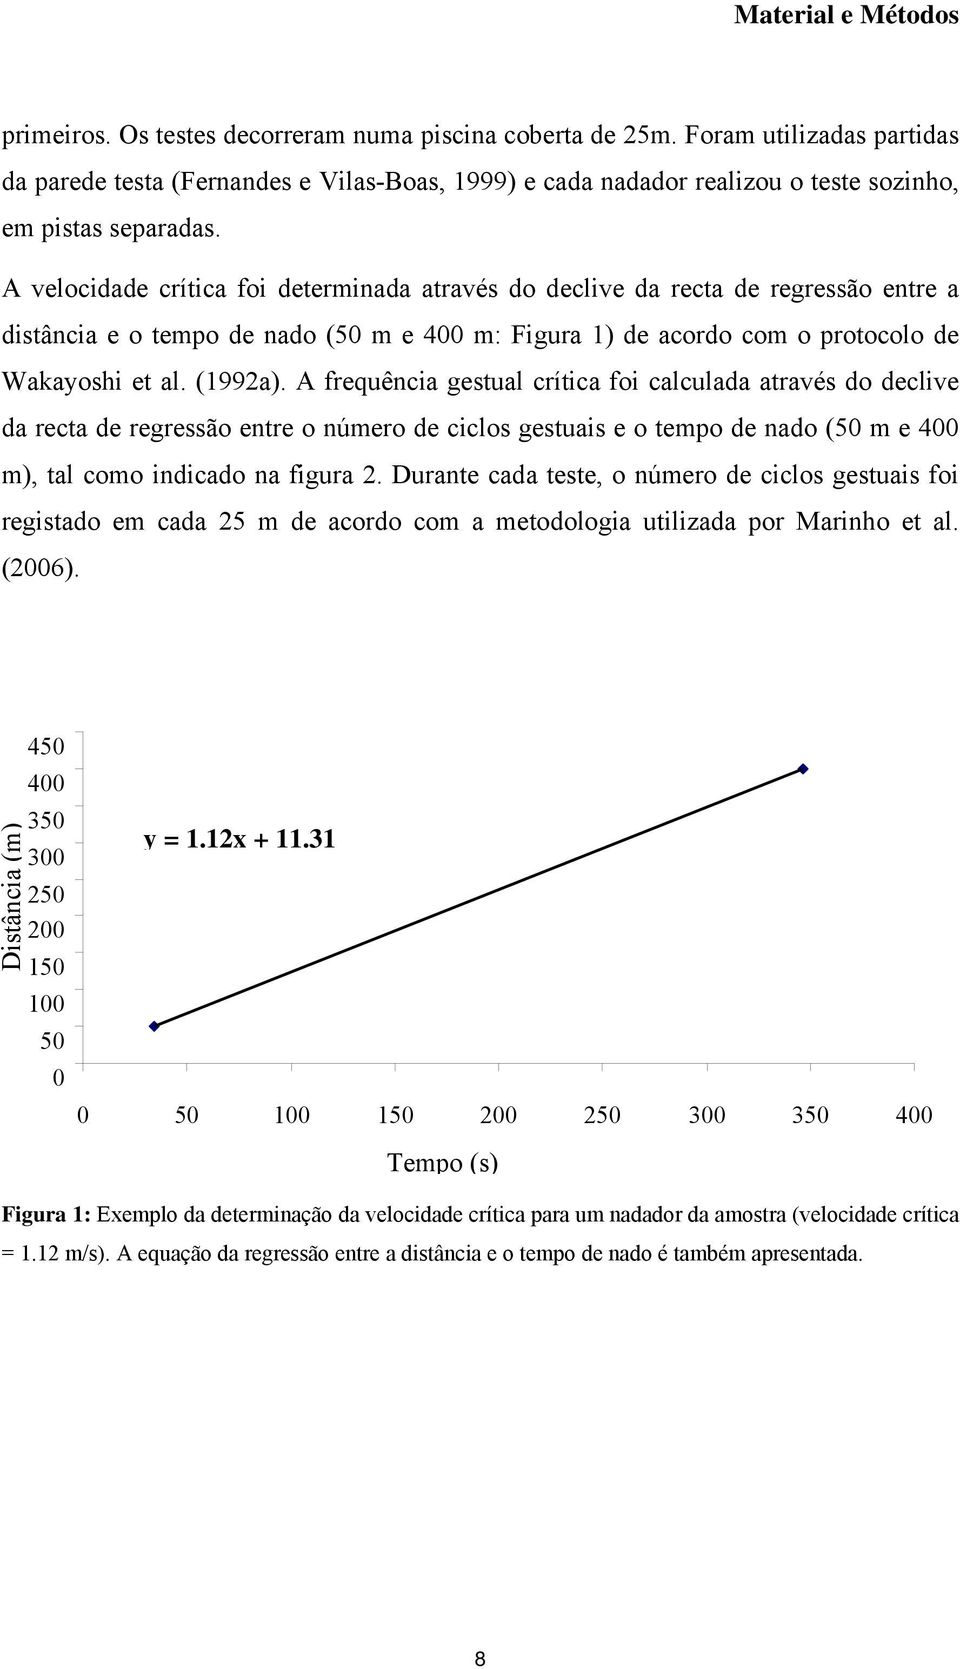 A velocidade crítica foi determinada através do declive da recta de regressão entre a distância e o tempo de nado (50 m e 400 m: Figura 1) de acordo com o protocolo de Wakayoshi et al. (1992a).